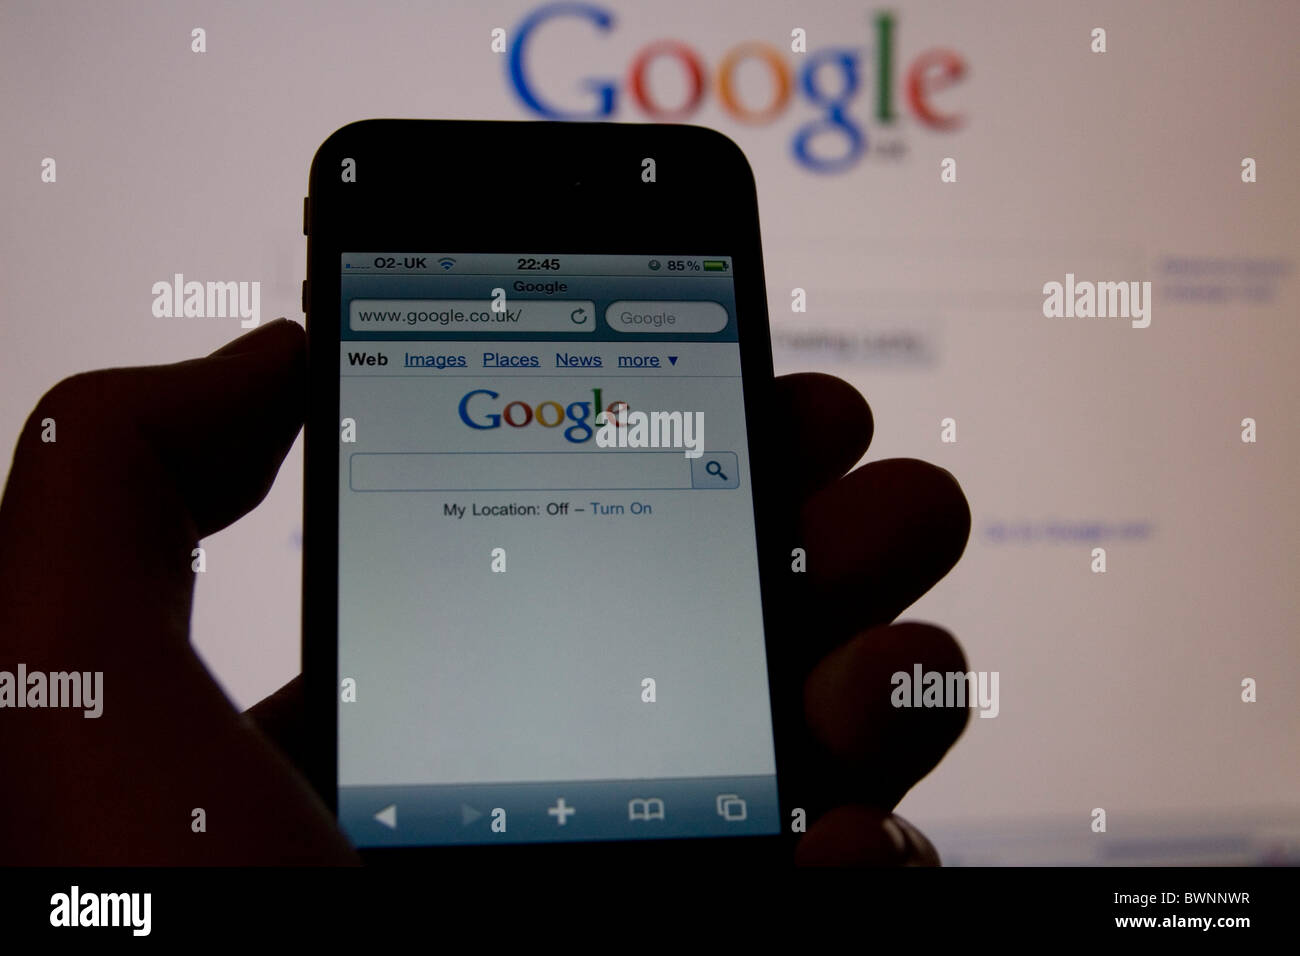 Un Apple iPhone 4 téléphone intelligent montrant Google mobile avec le site complet sur l'affichage à l'arrière-plan Banque D'Images